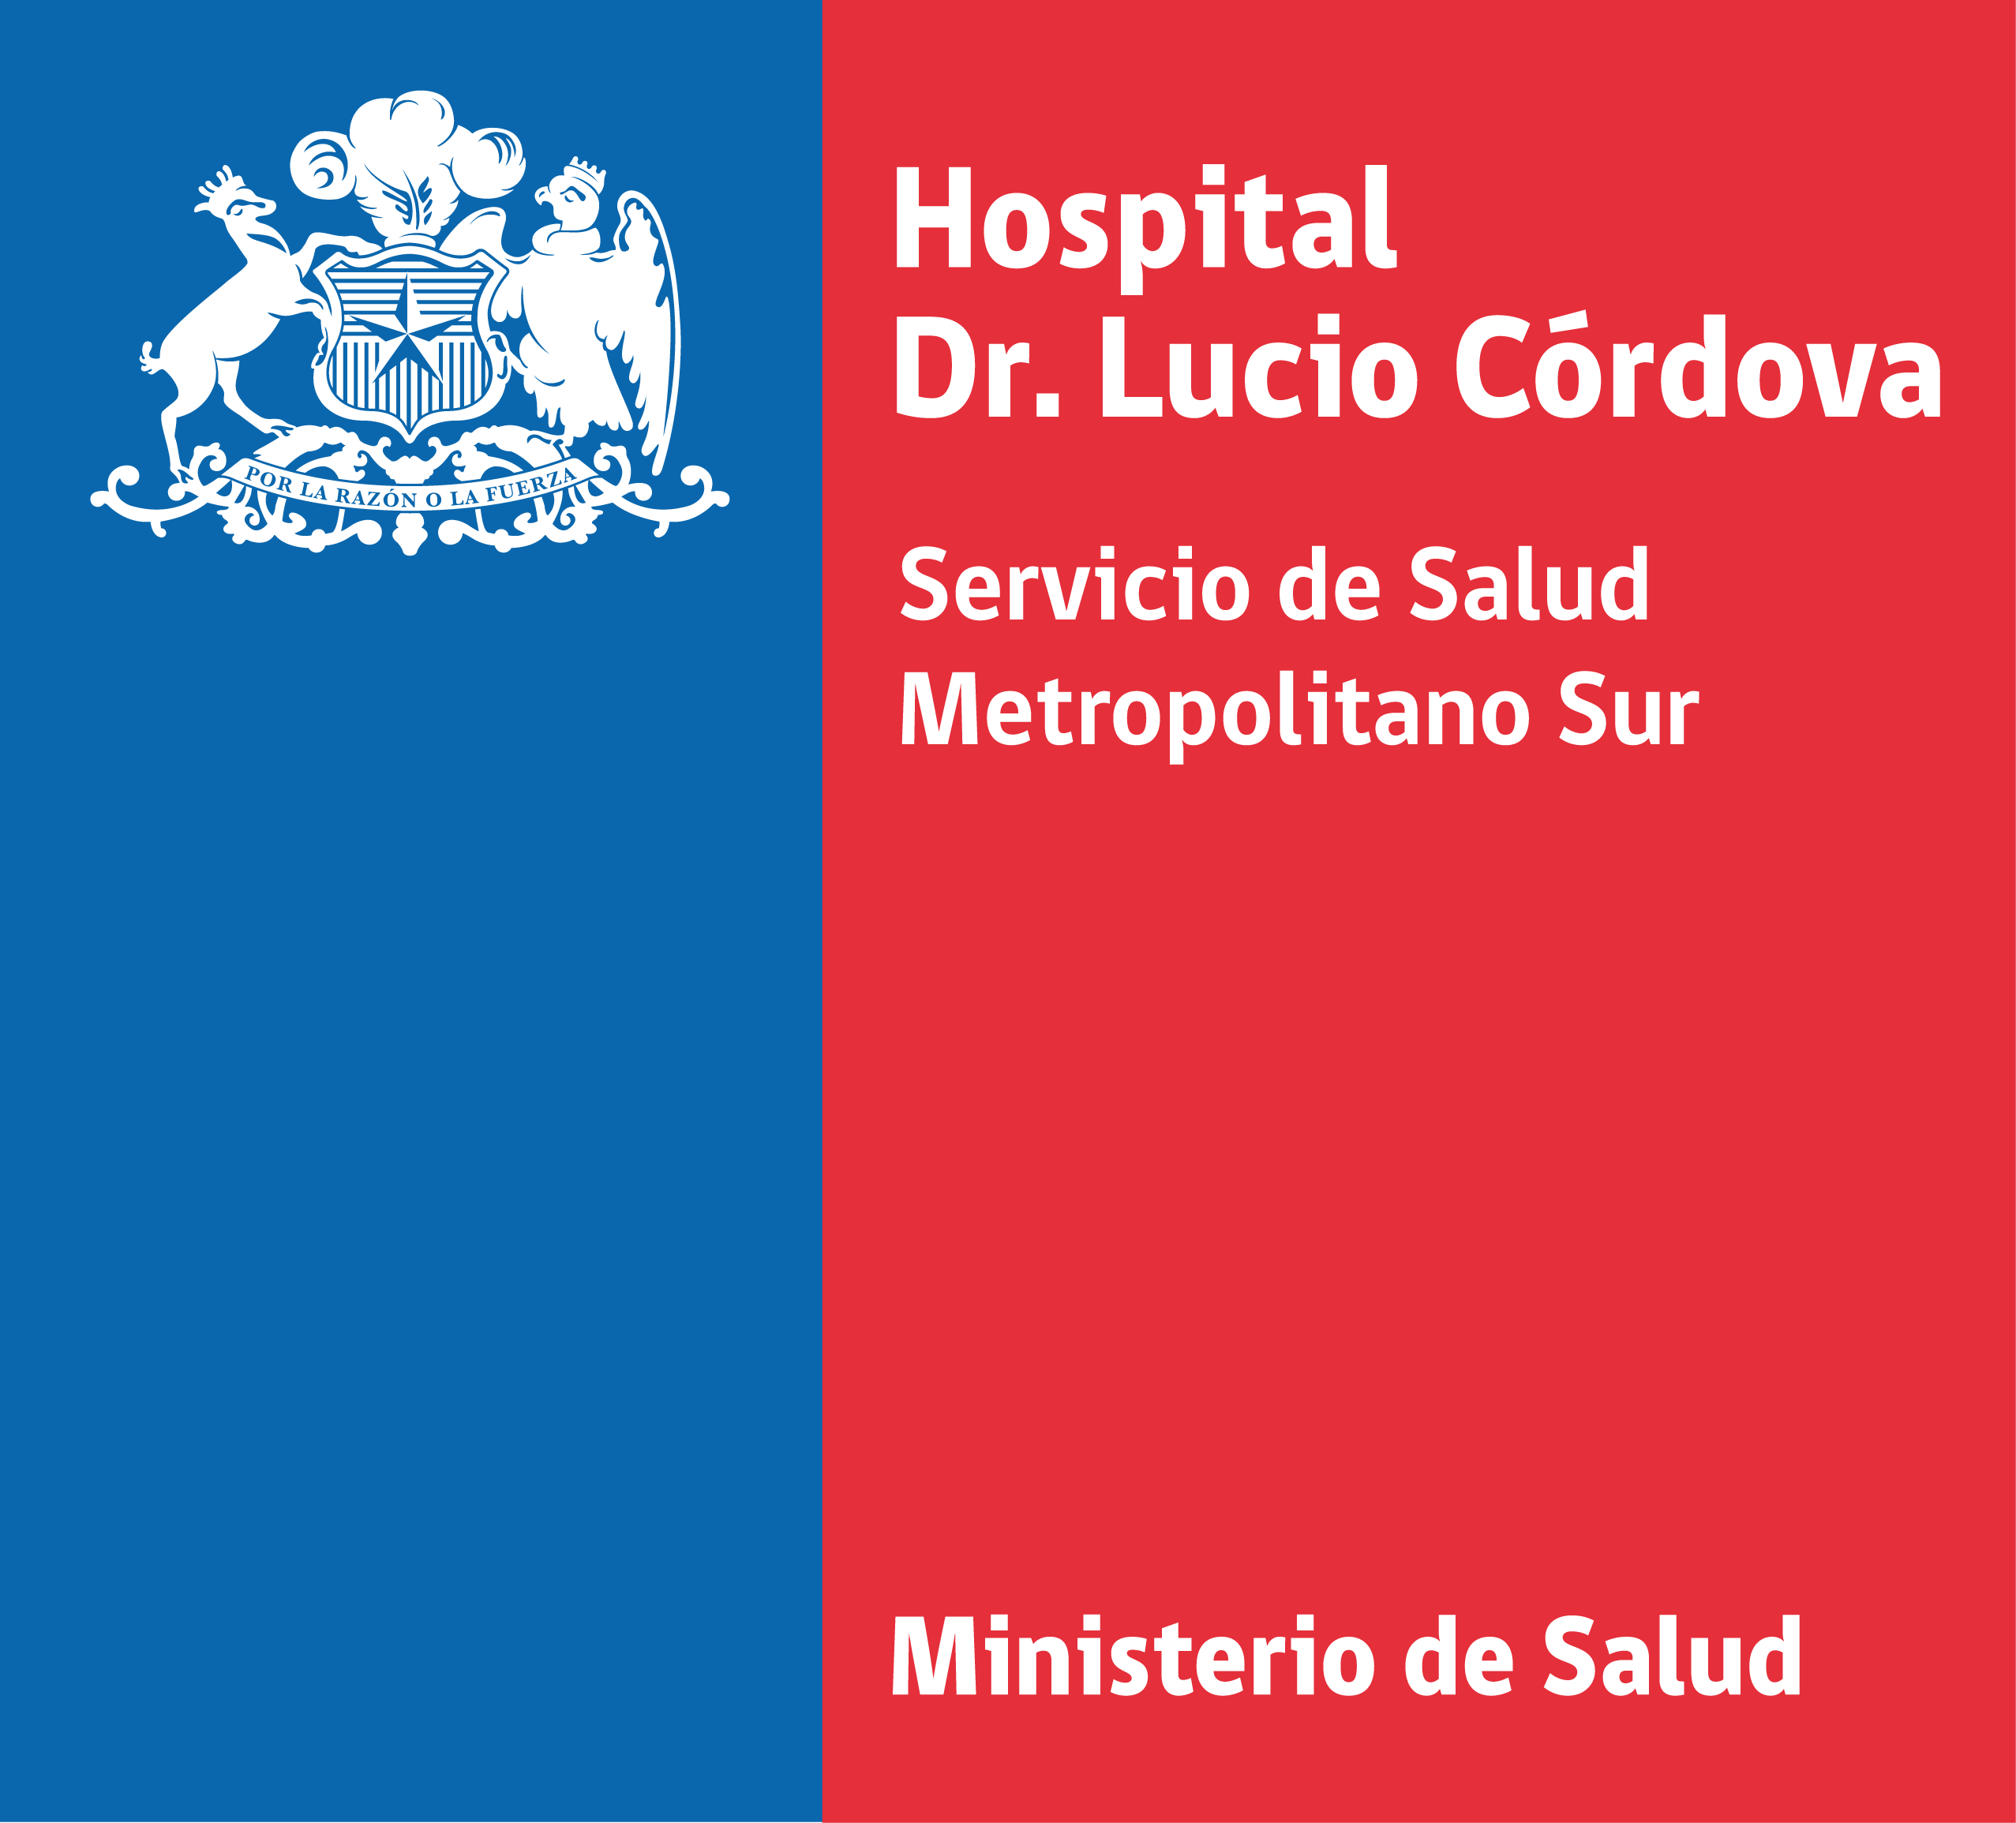 Hospital Dr. Lucio Cordova